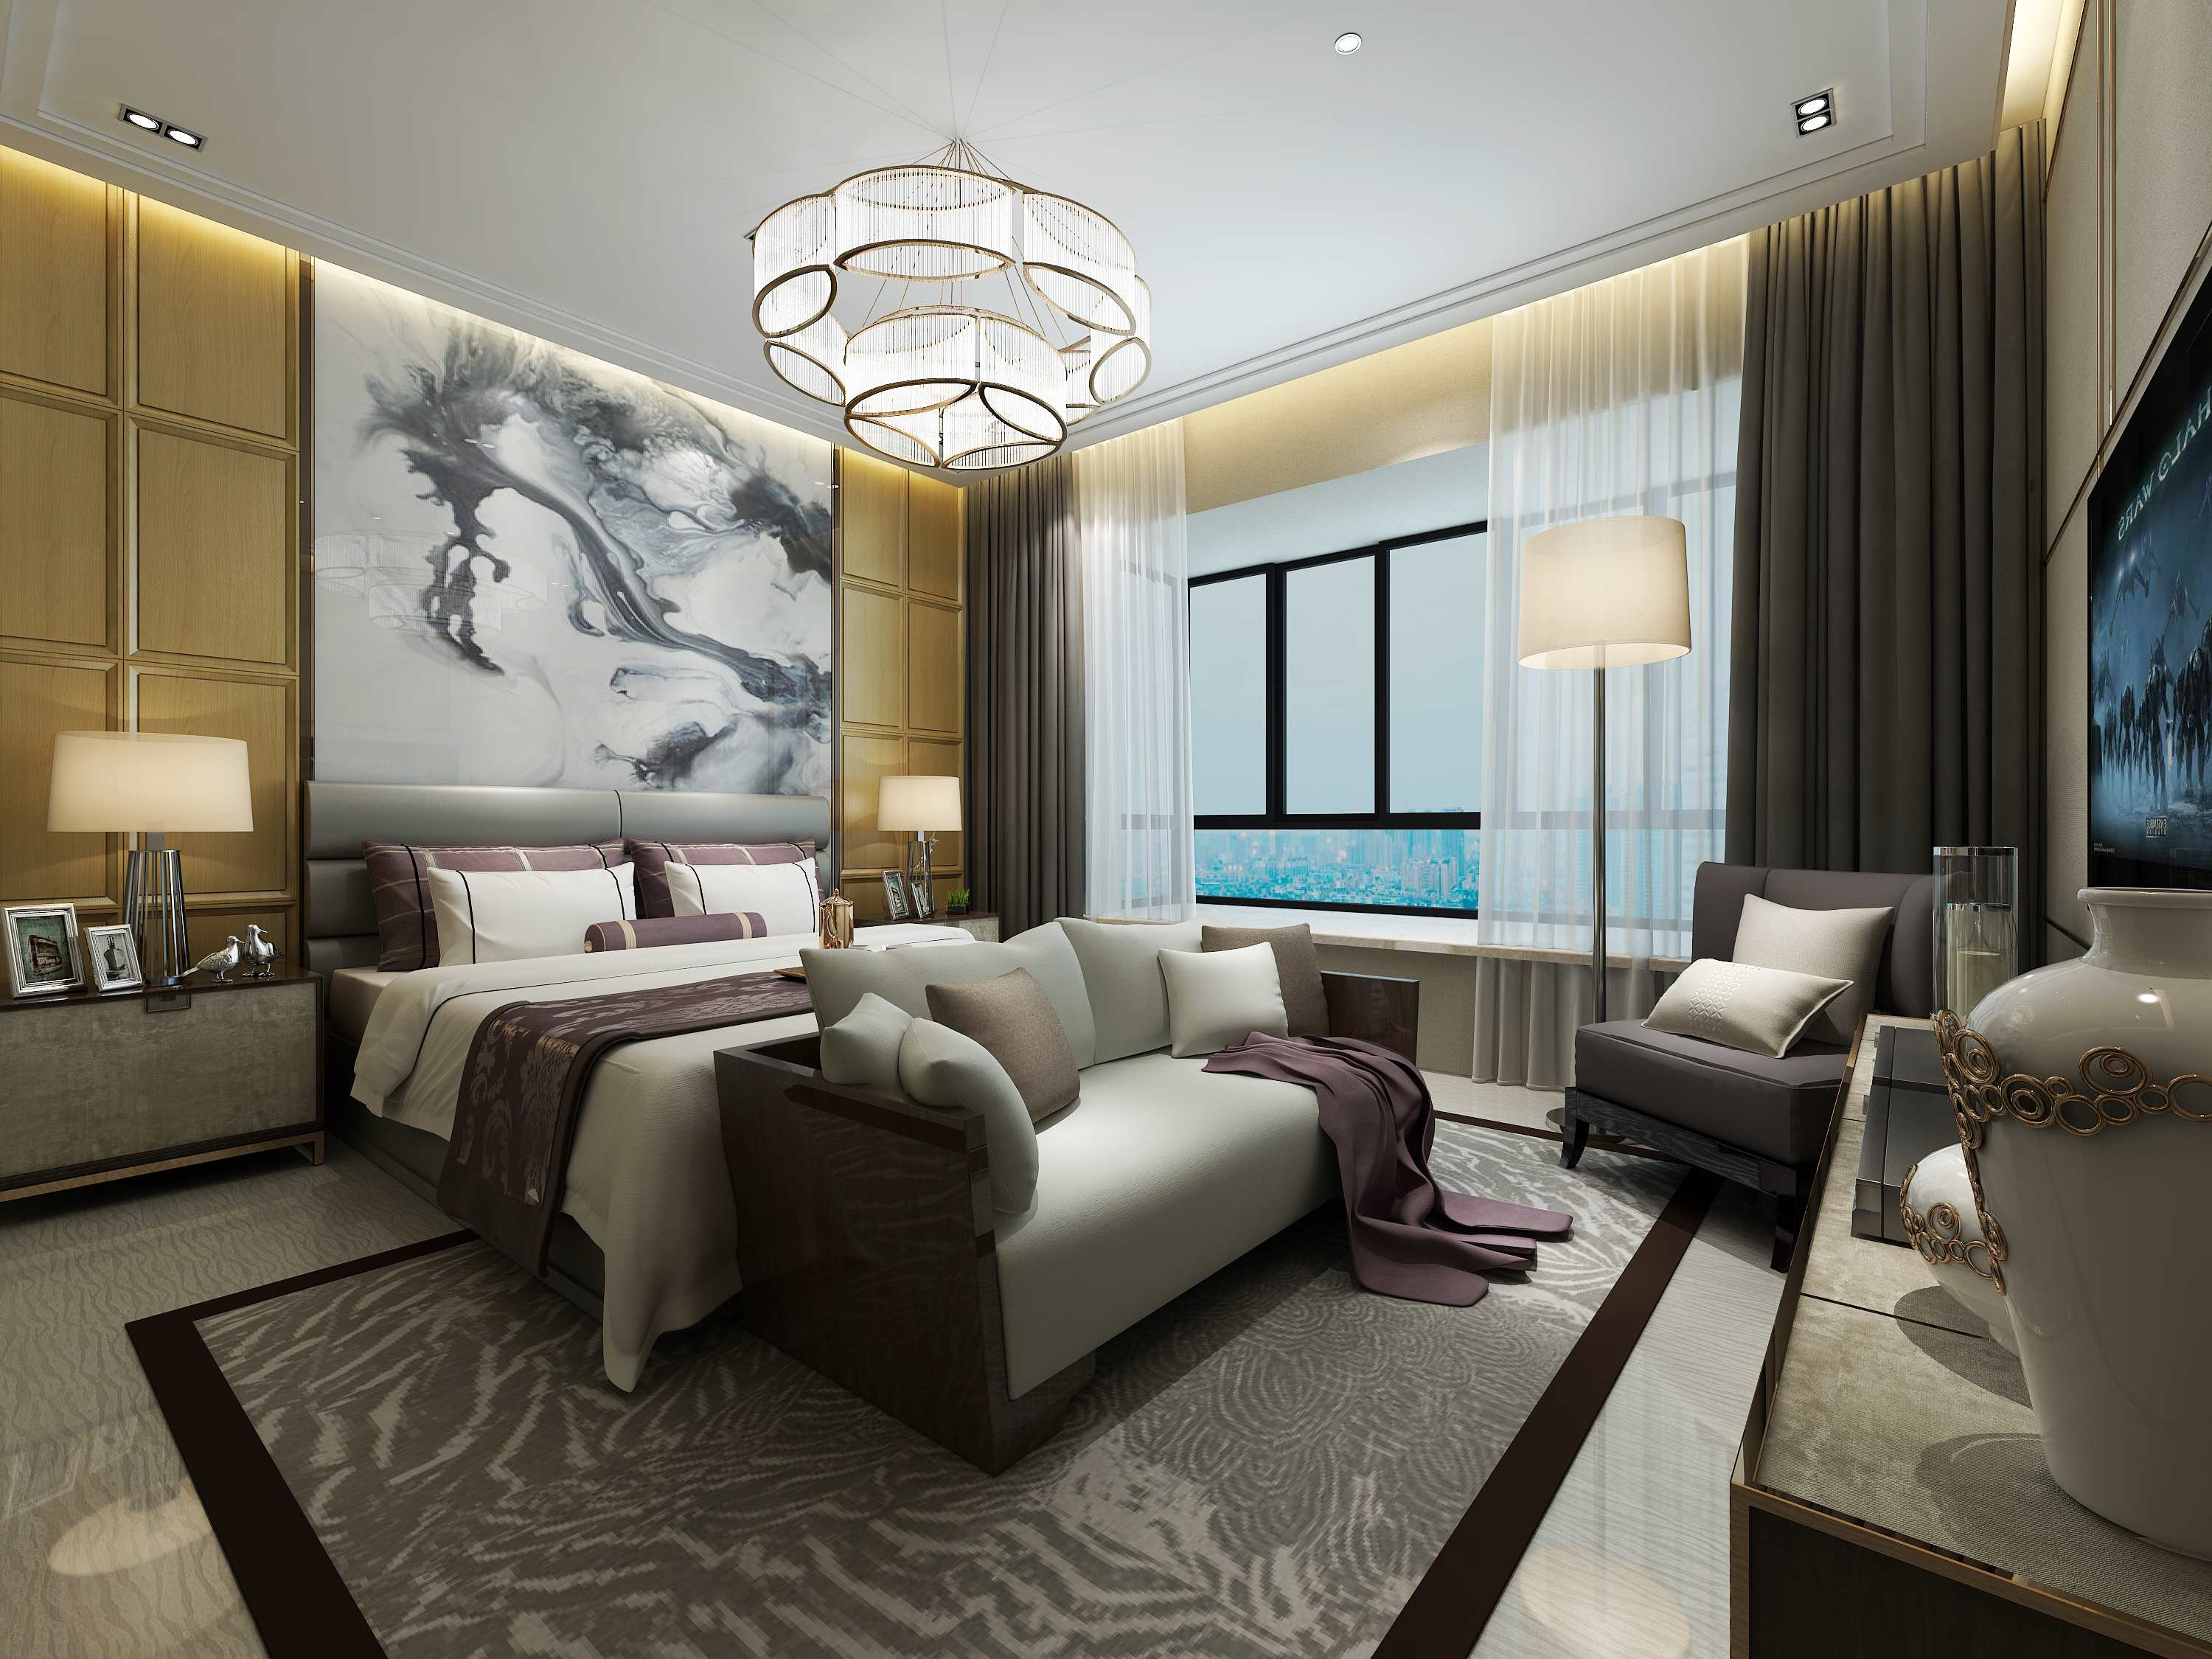 中式风格,三居室装修,15-20万装修,140平米以上装修,卧室,背景墙,窗帘,沙发,灰色